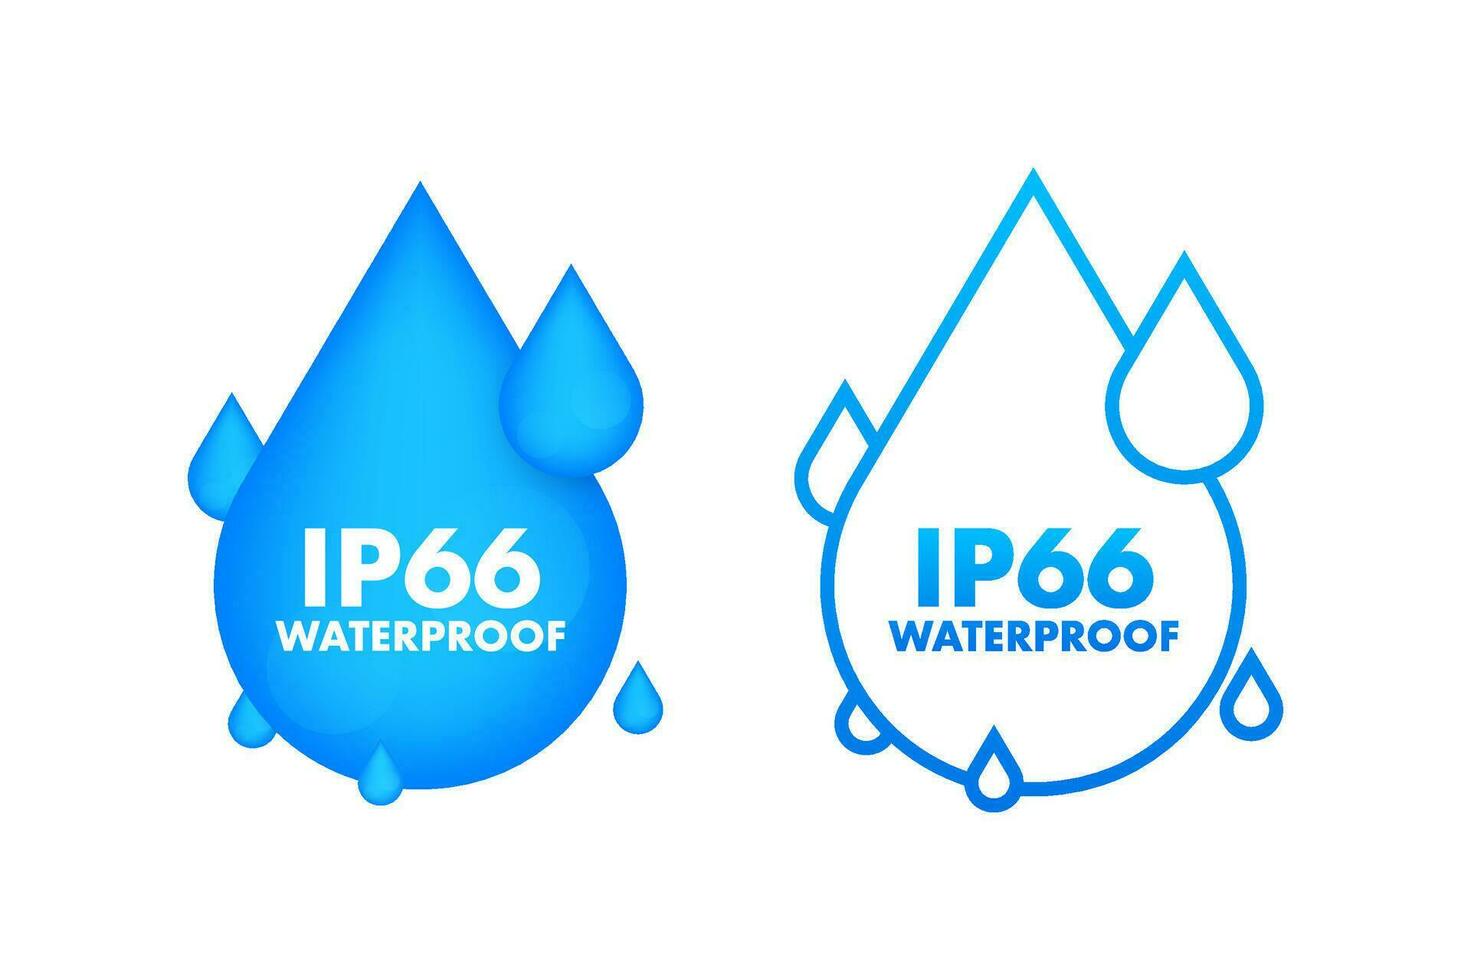 ip66 vattentät, vatten motstånd nivå information tecken. vektor